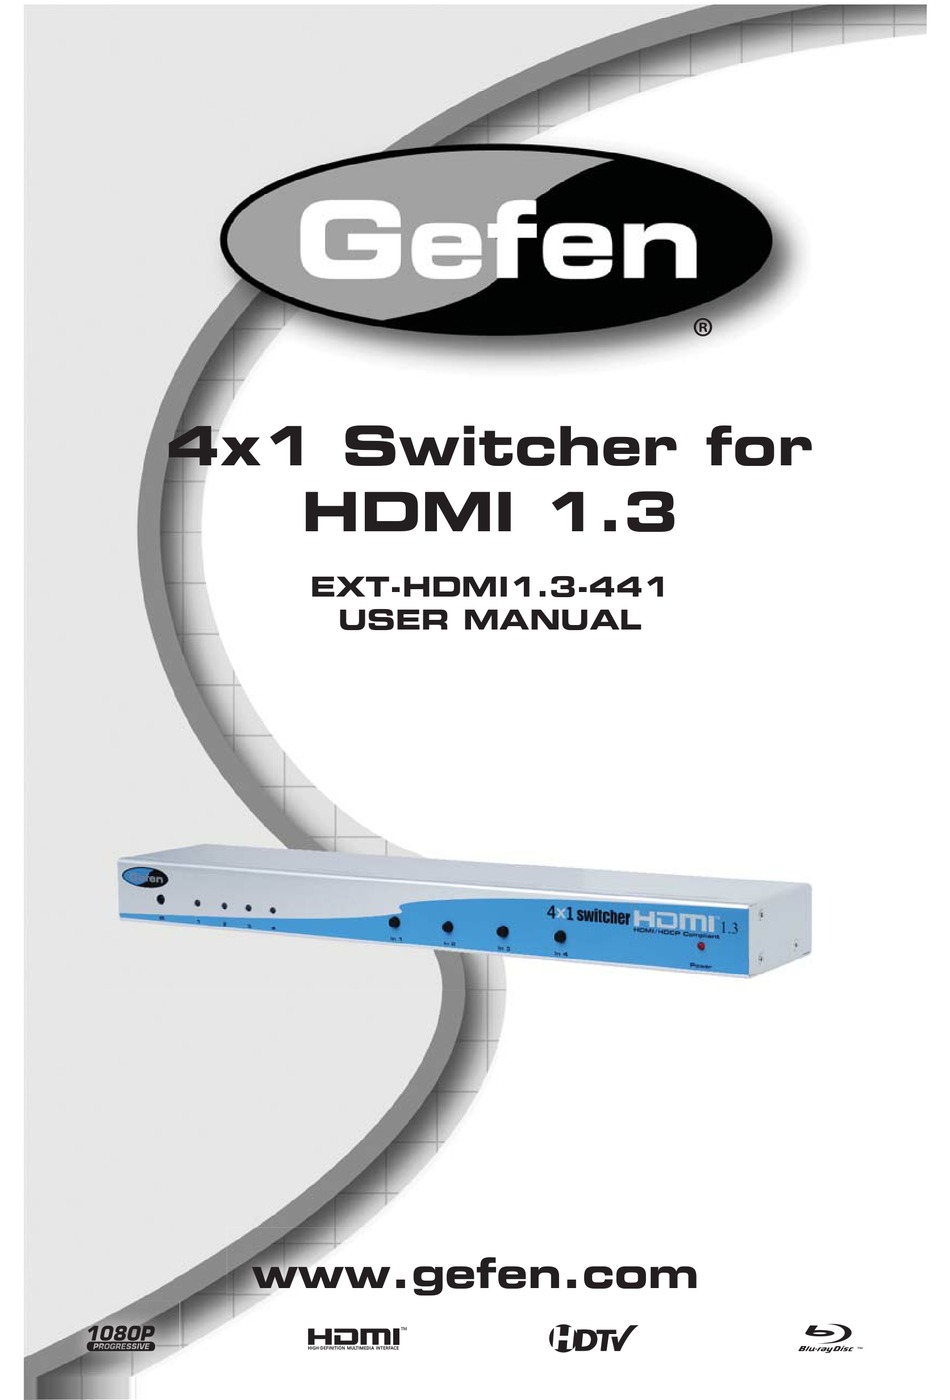 GEFEN EXT-HDMI1.3-441 USER MANUAL Pdf Download | ManualsLib